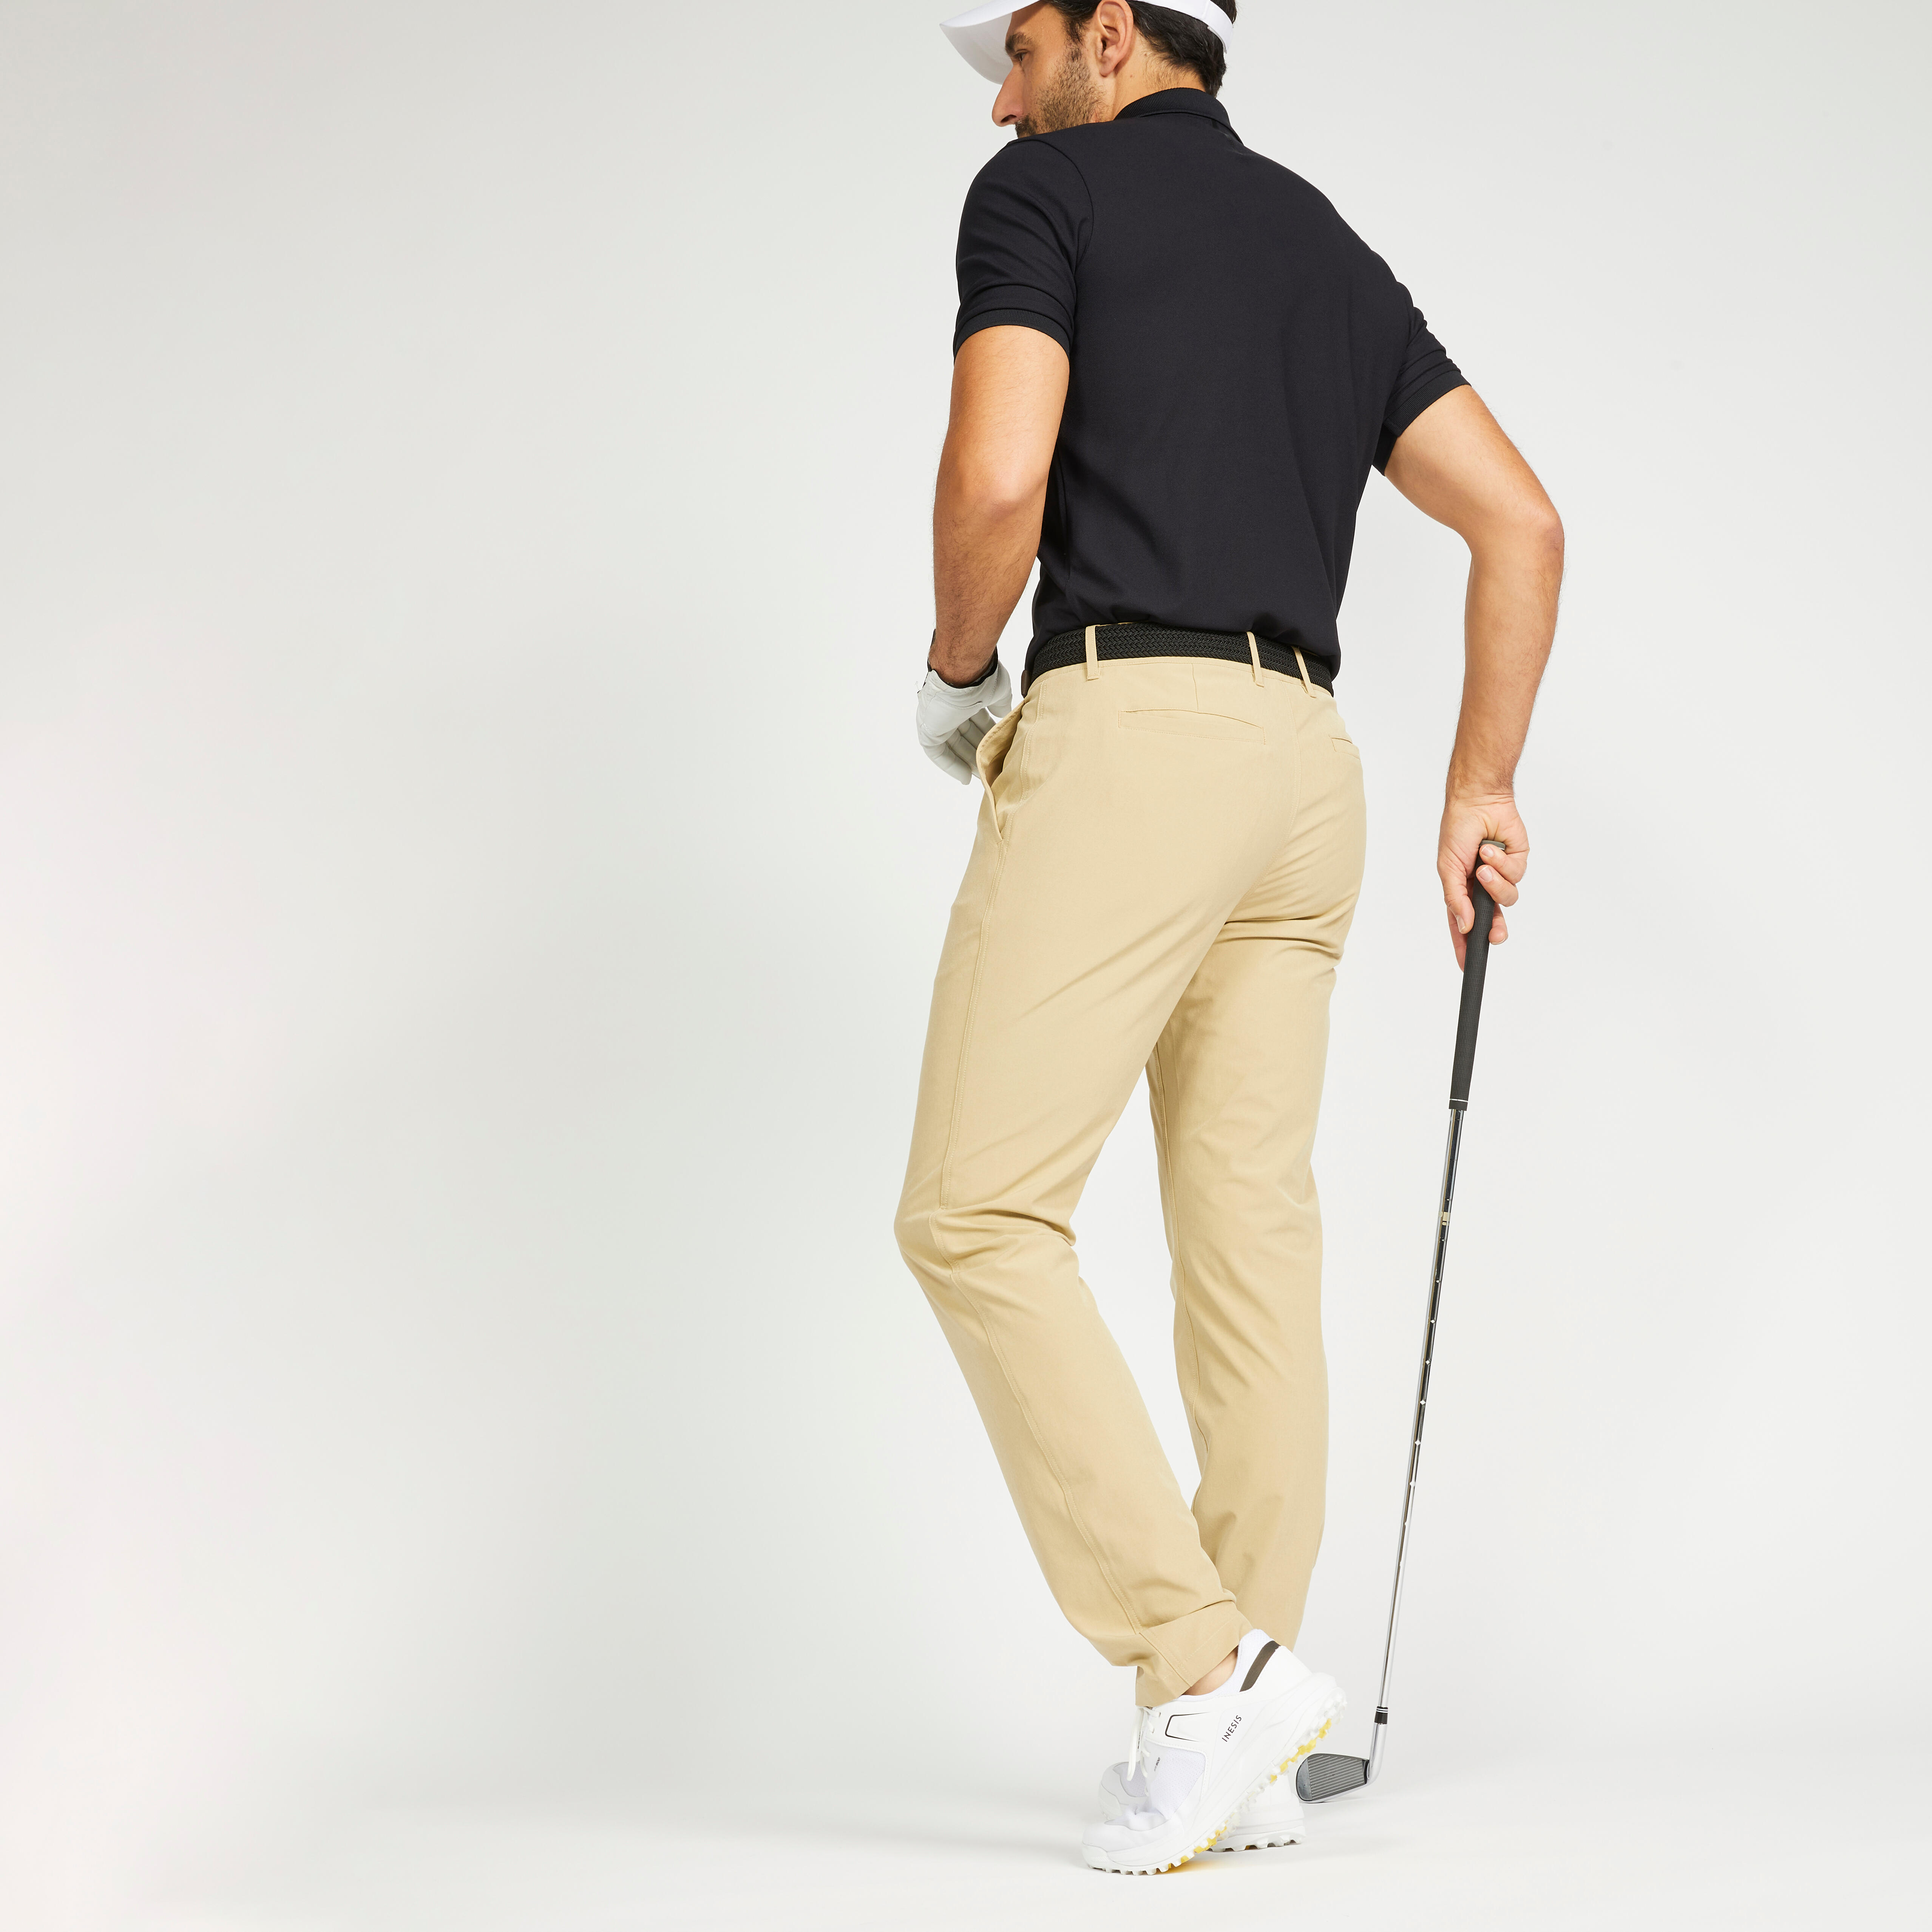 Jual Celana Pria Golf Men Pants Inesis Cream - 